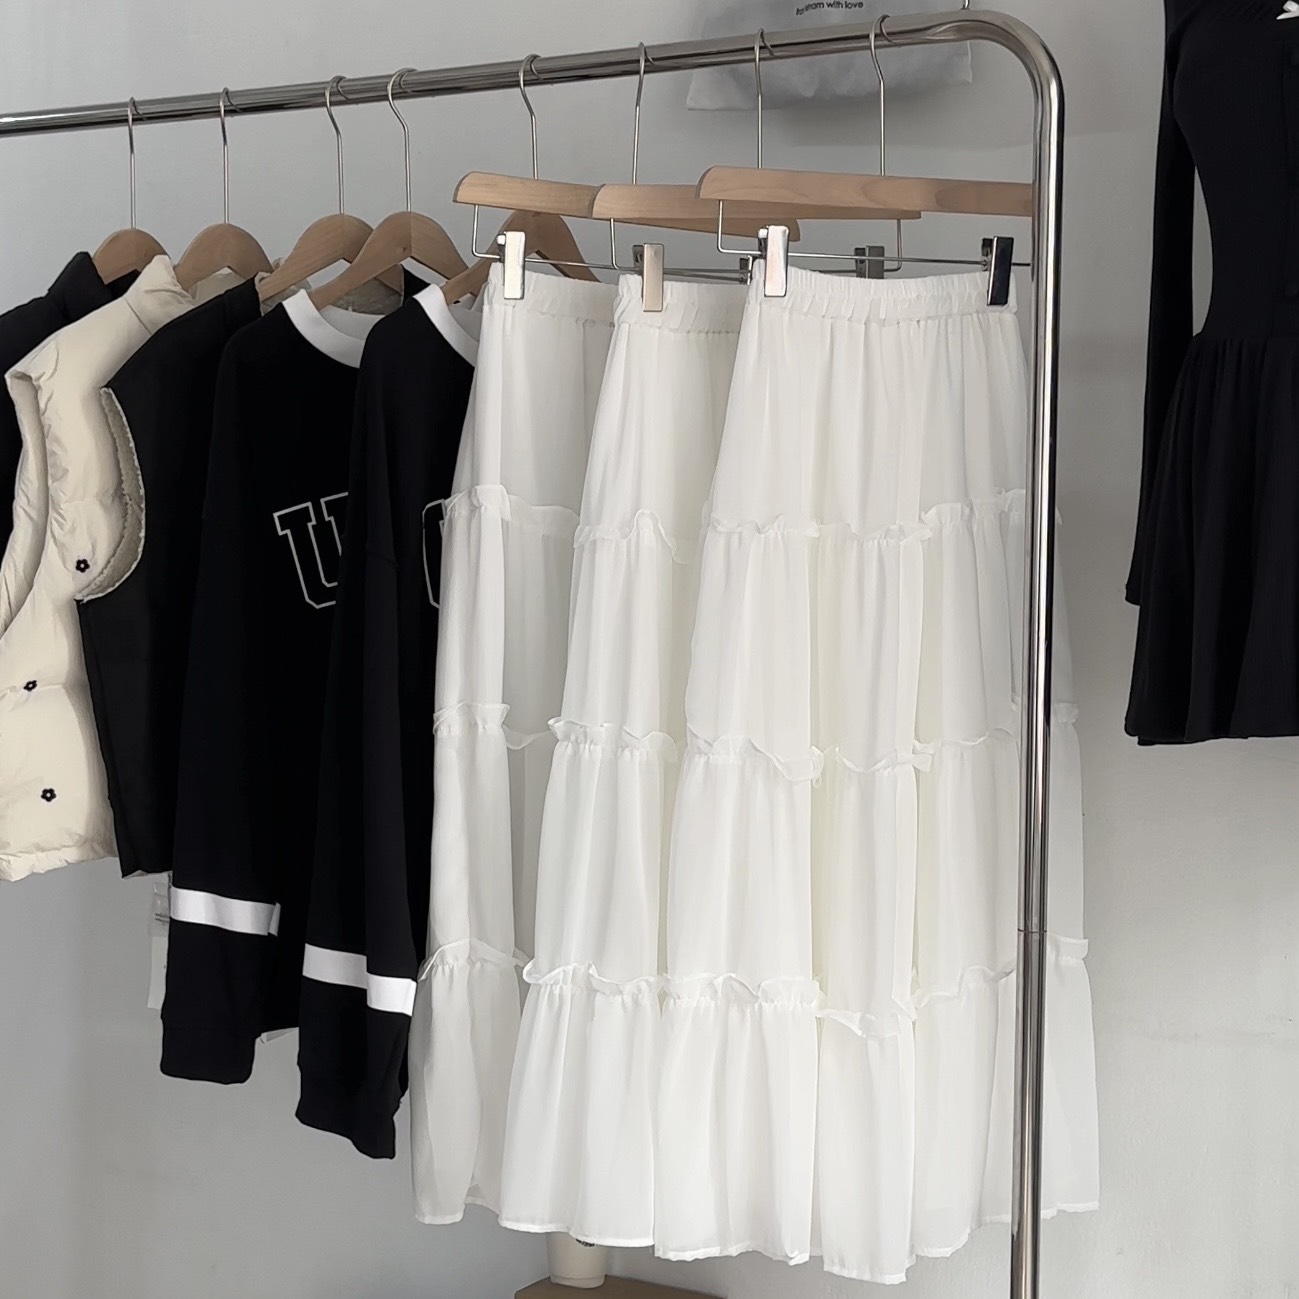 Chân Váy Dài 3 Tầng- Chân váy đen trắng 2 lớp chất liệu voan kiểu dáng  ulzzang hàn quốc - khuyến mãi giá rẻ chỉ: 79.000 đ | Giảm giá mỗi ngày